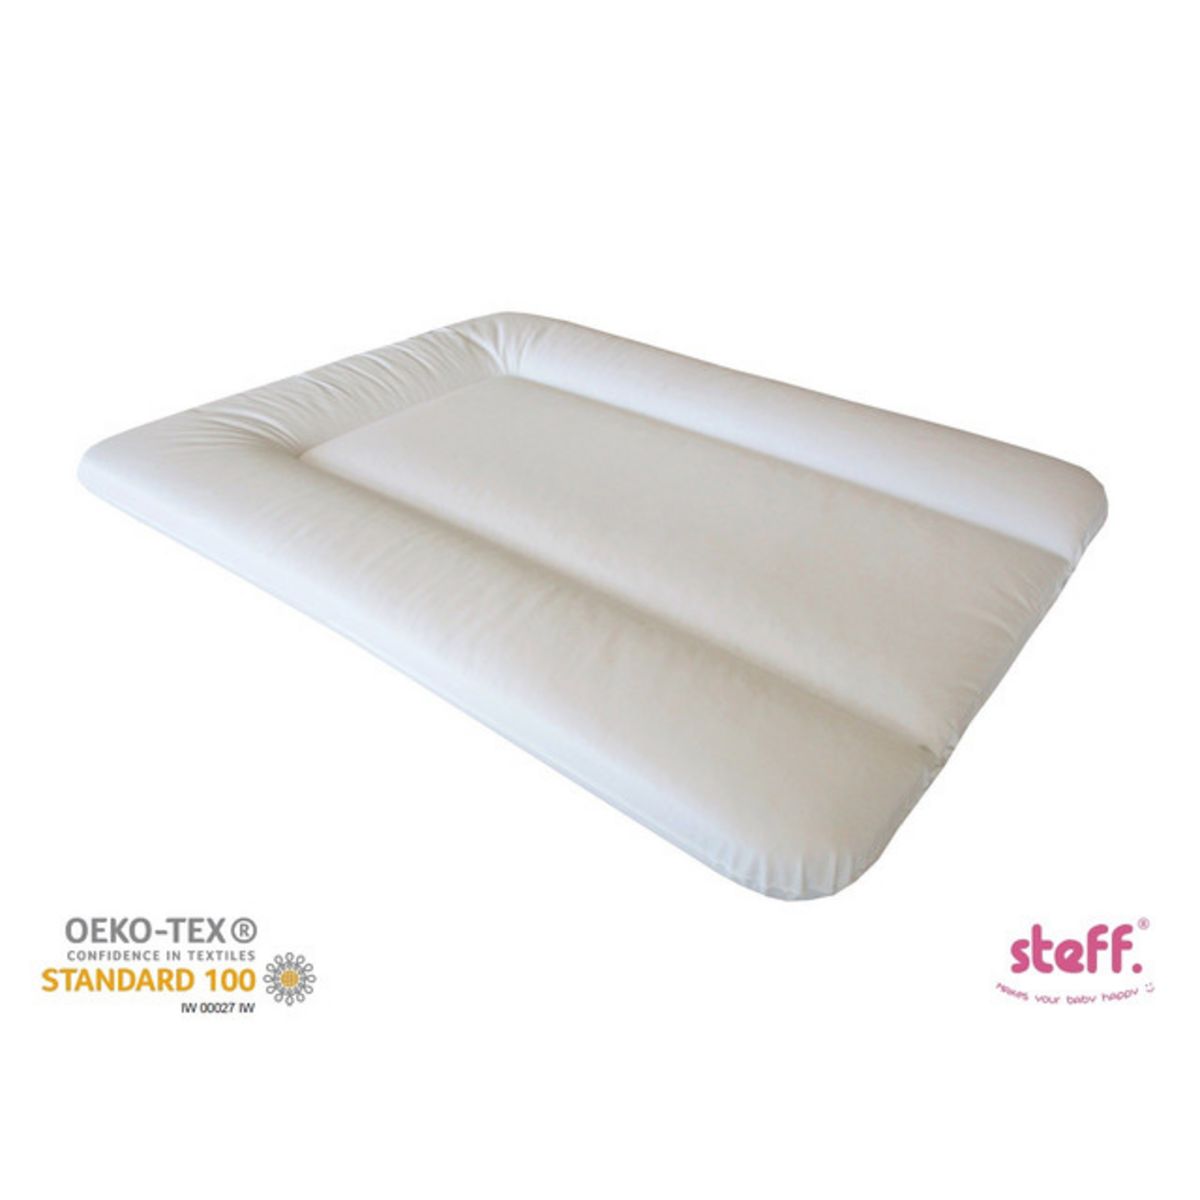  Steff - Matelas à langer - 70x50 cm - Blanc - Label de qualité OEKO-TEX standard 100